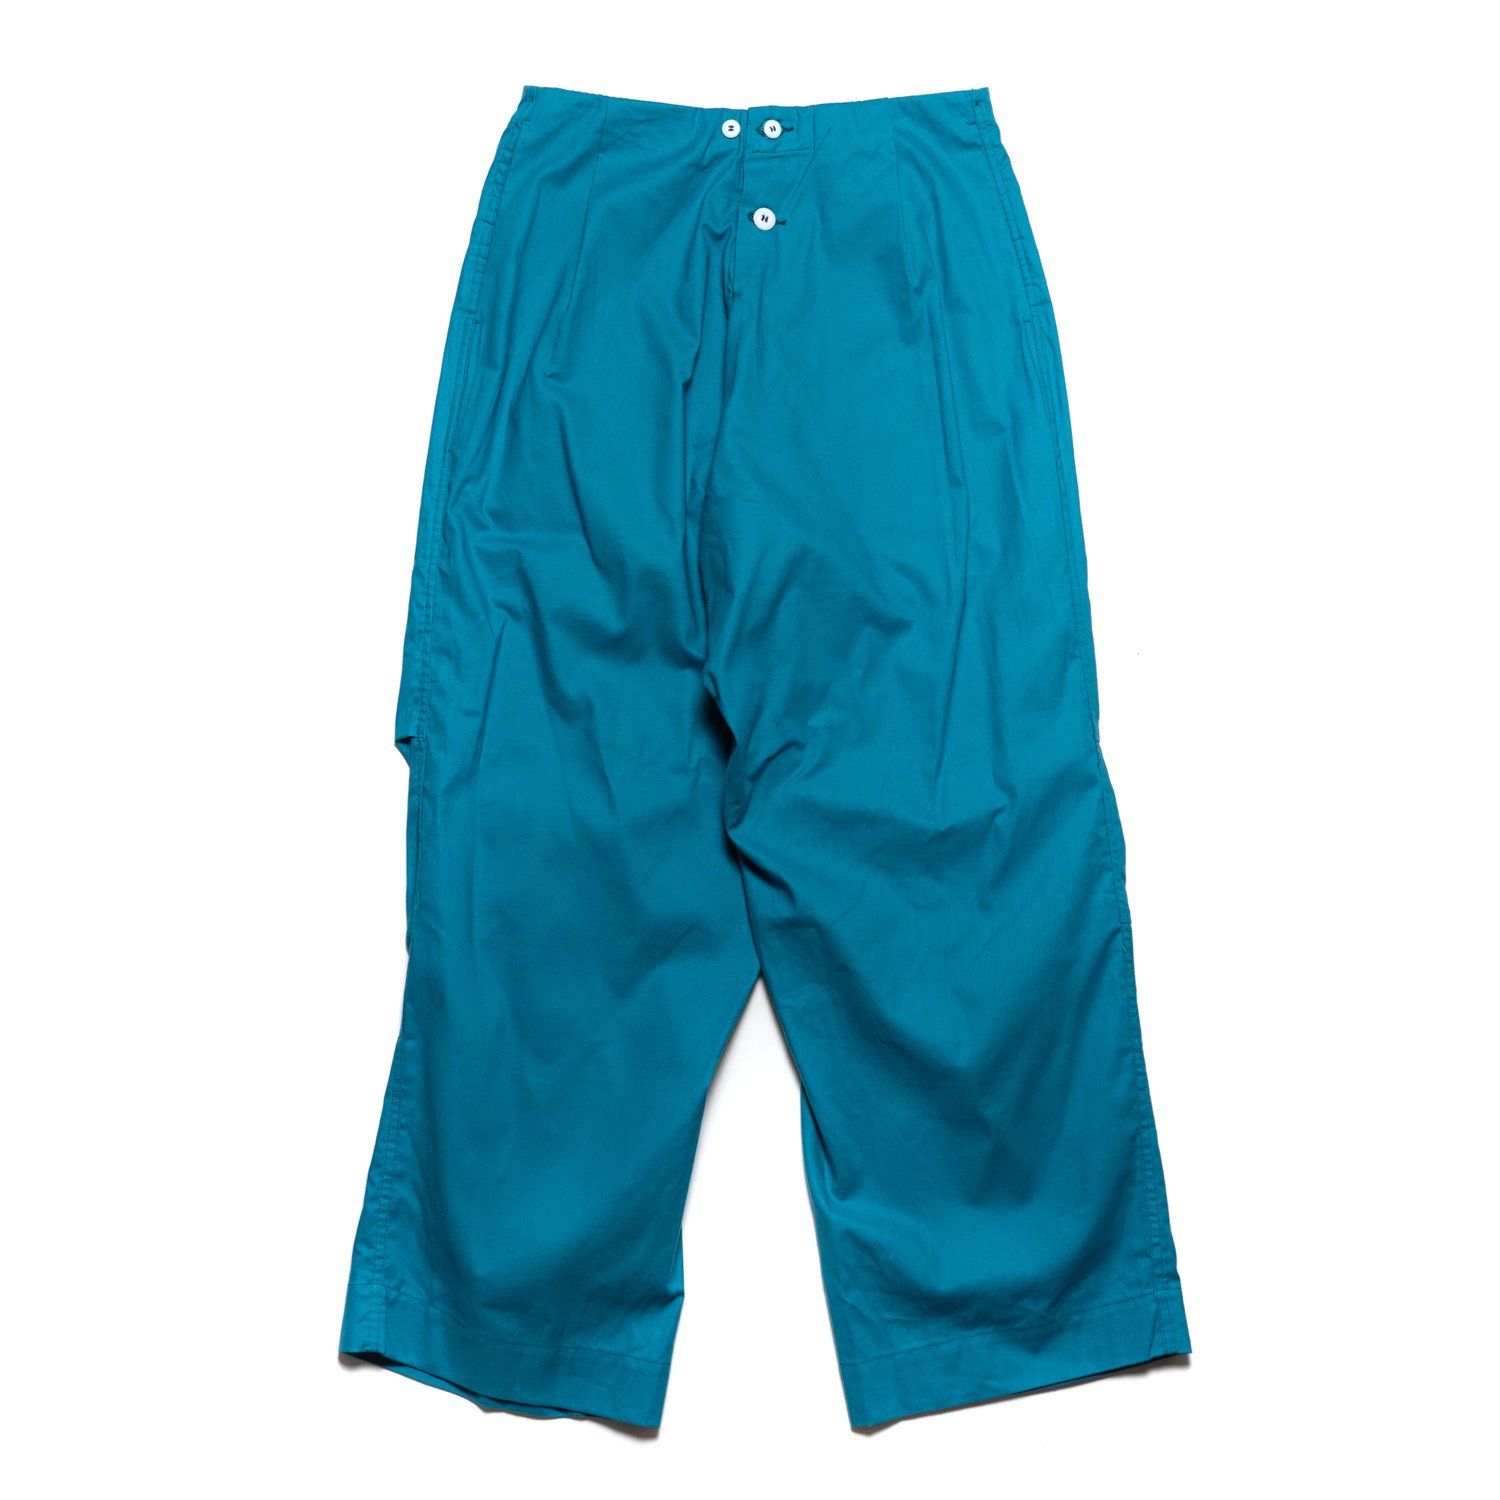 TUKI * 0041 Pajamas * Turquoise